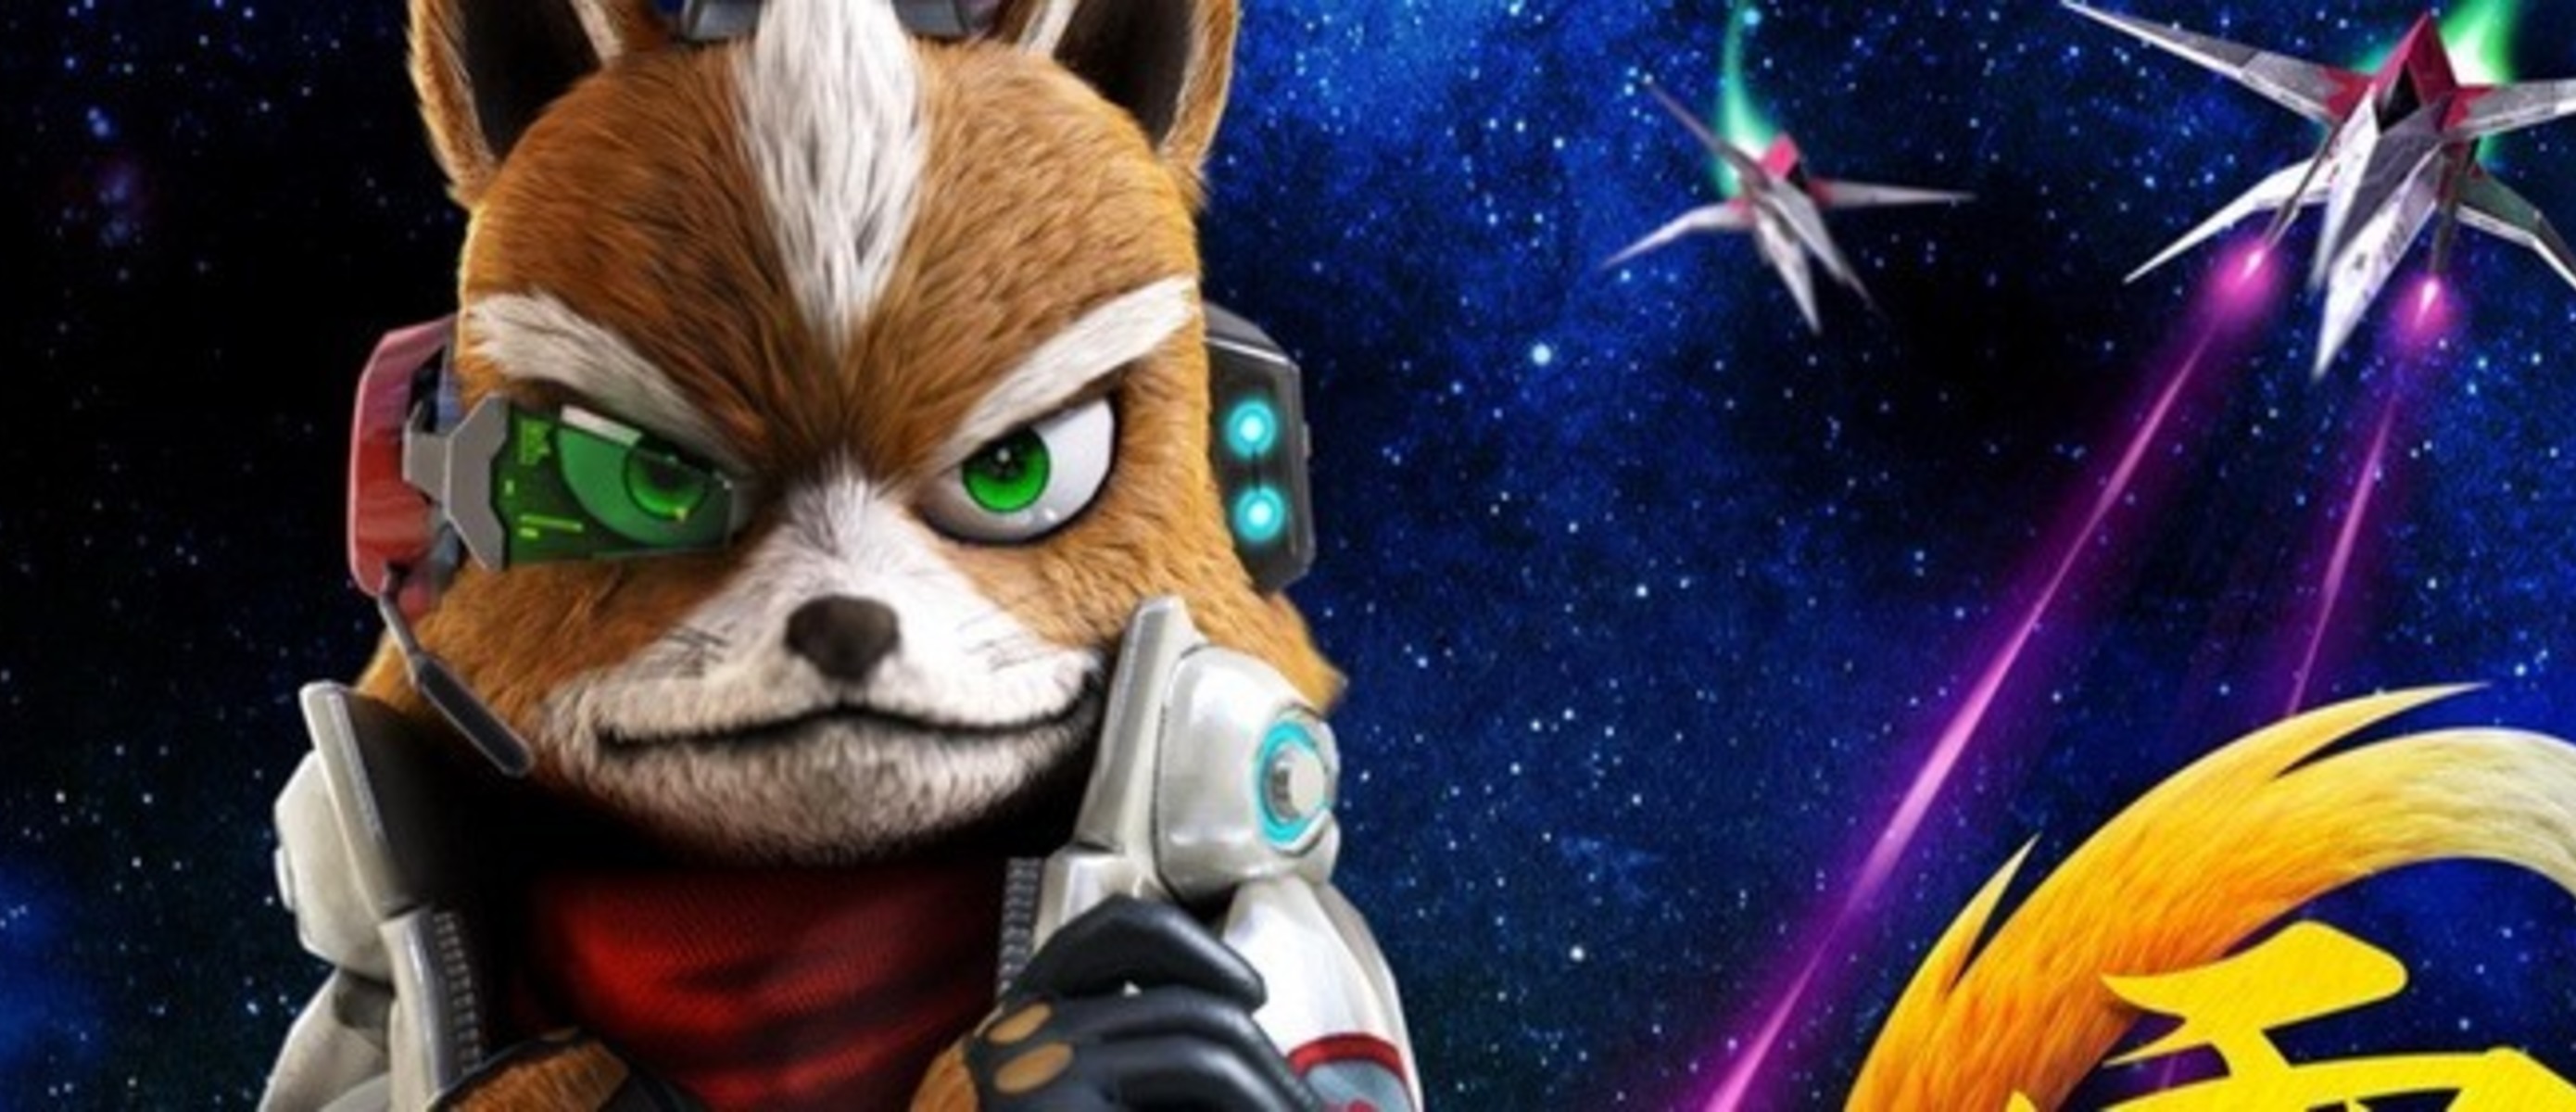 Zero fox. Star Fox Zero. Star Fox 1. Star Fox Nintendo Switch. Star Fox Zero 80.